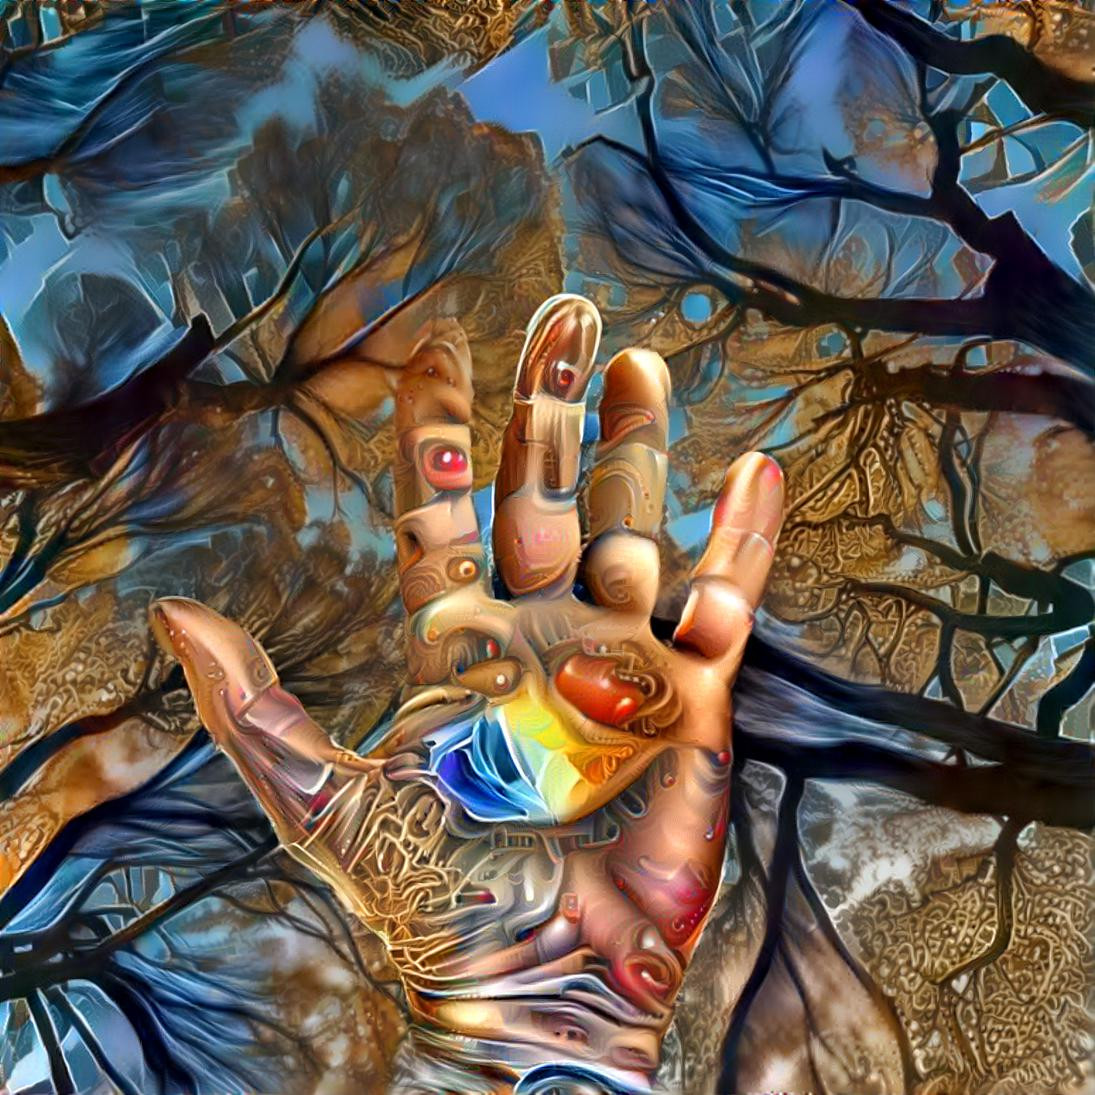 Magic hands